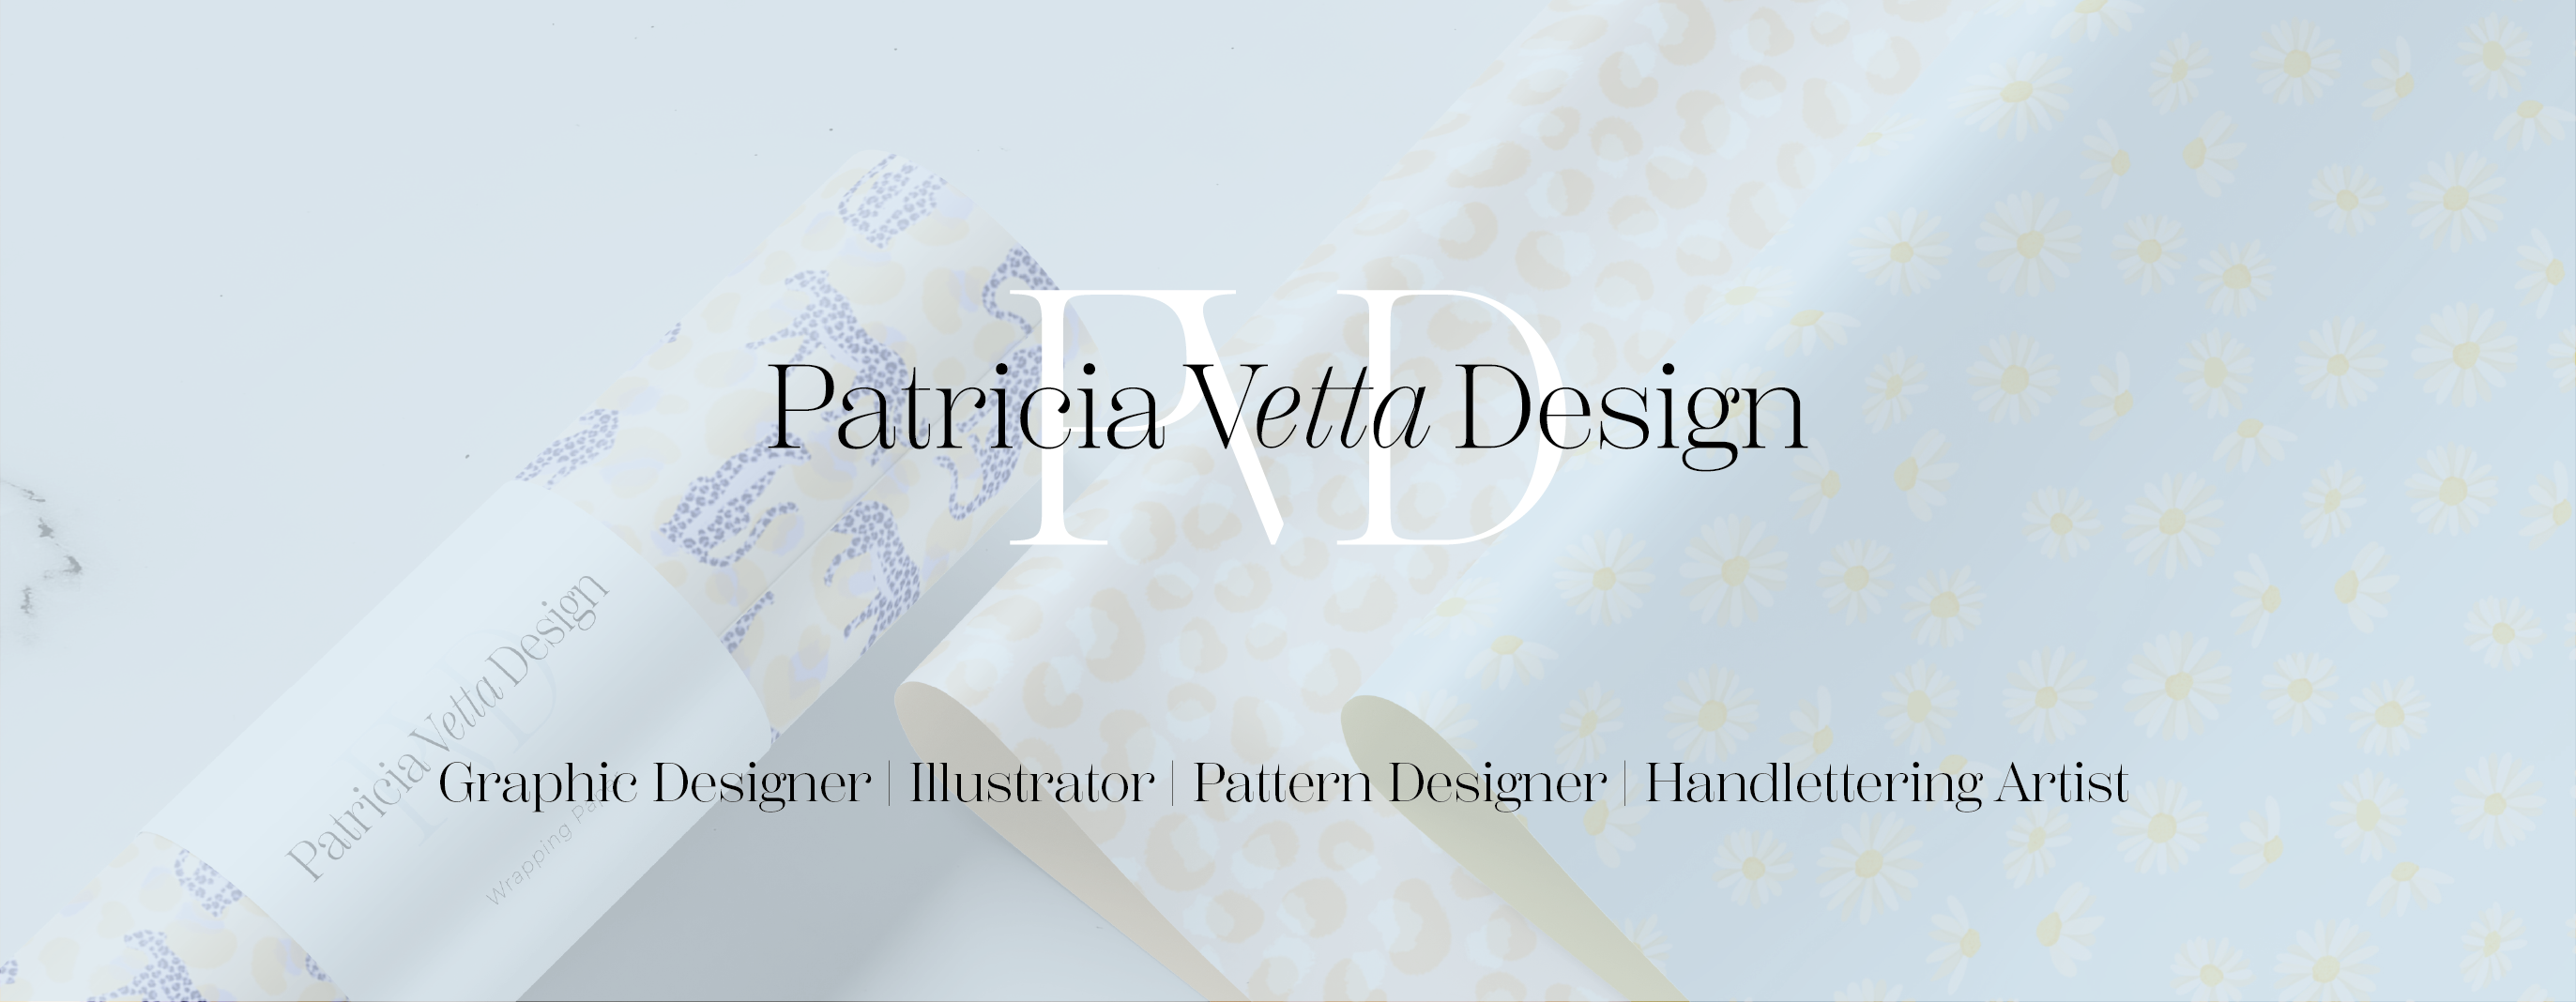 Logo Patricia Vetta Design